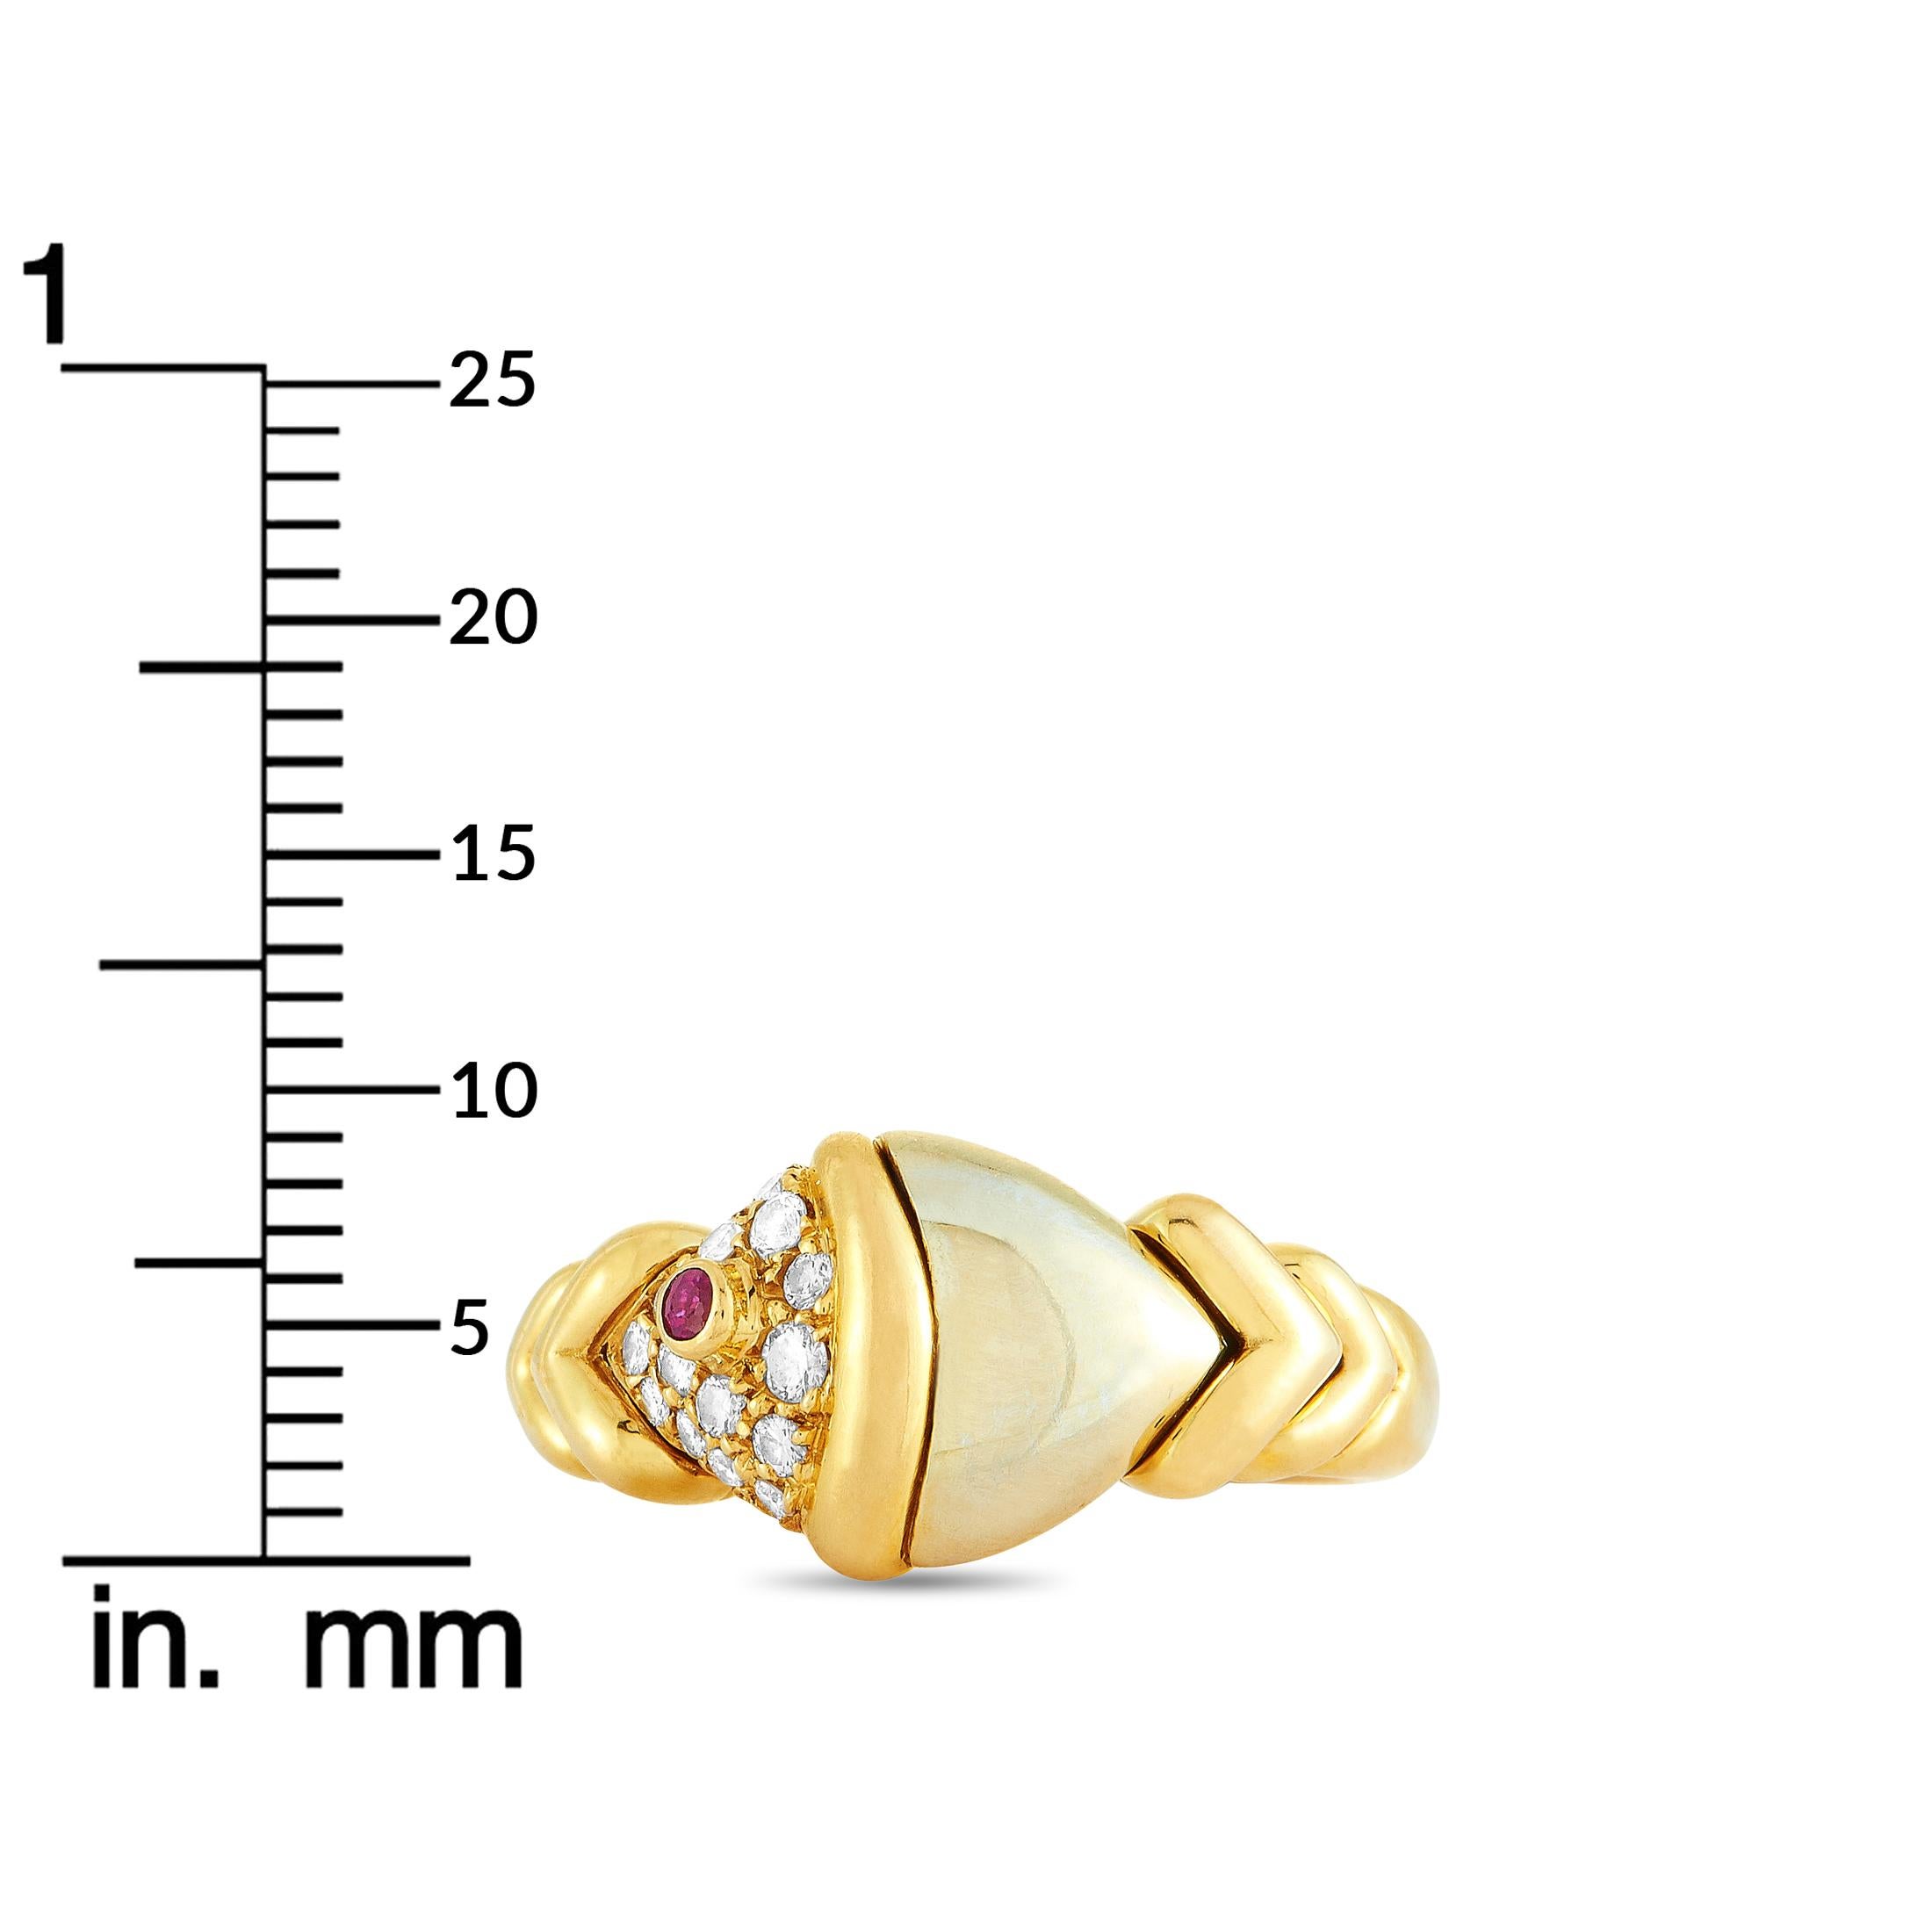 Bvlgari Yellow and White Gold Diamond and Ruby Ring 3